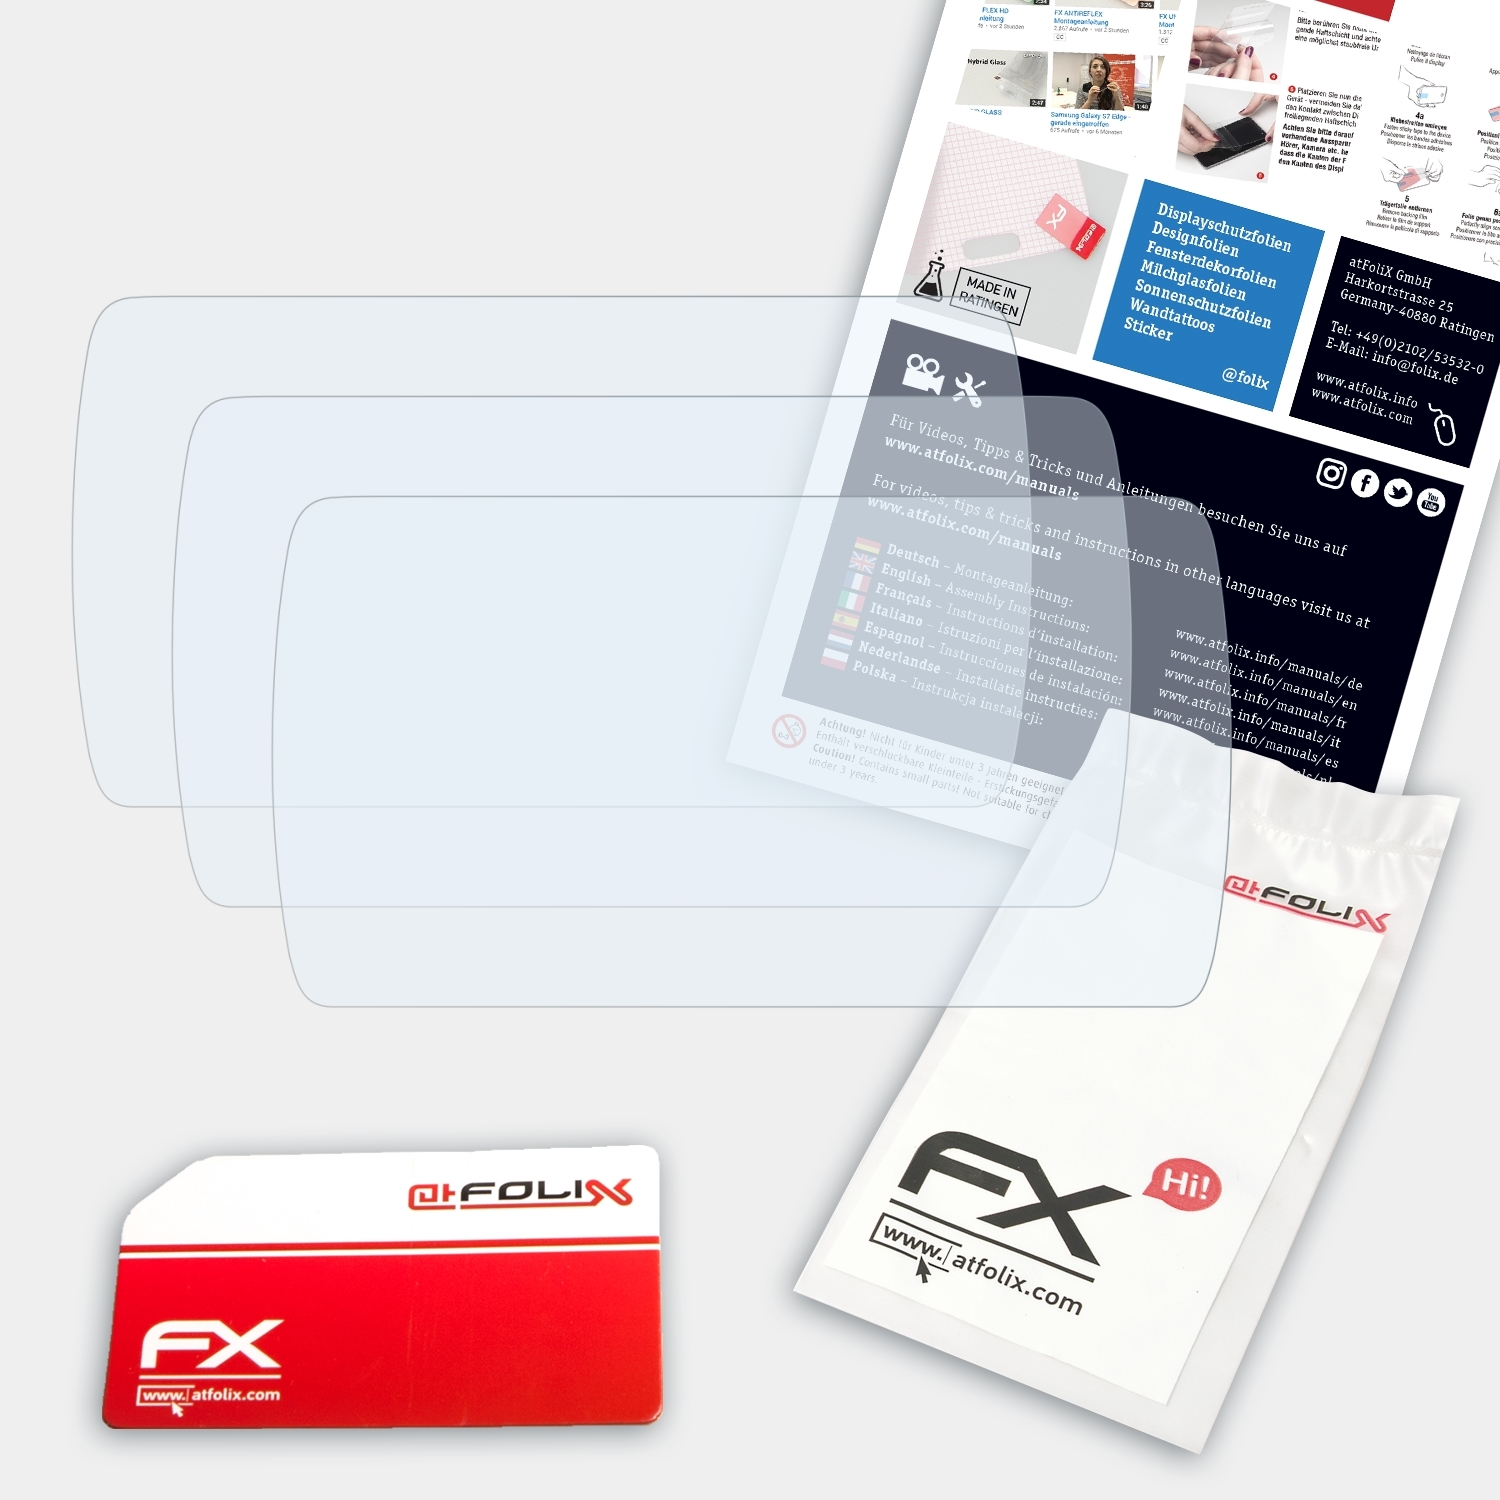 ATFOLIX 3x FX-Clear Displayschutz(für Nextbase Lite) 212